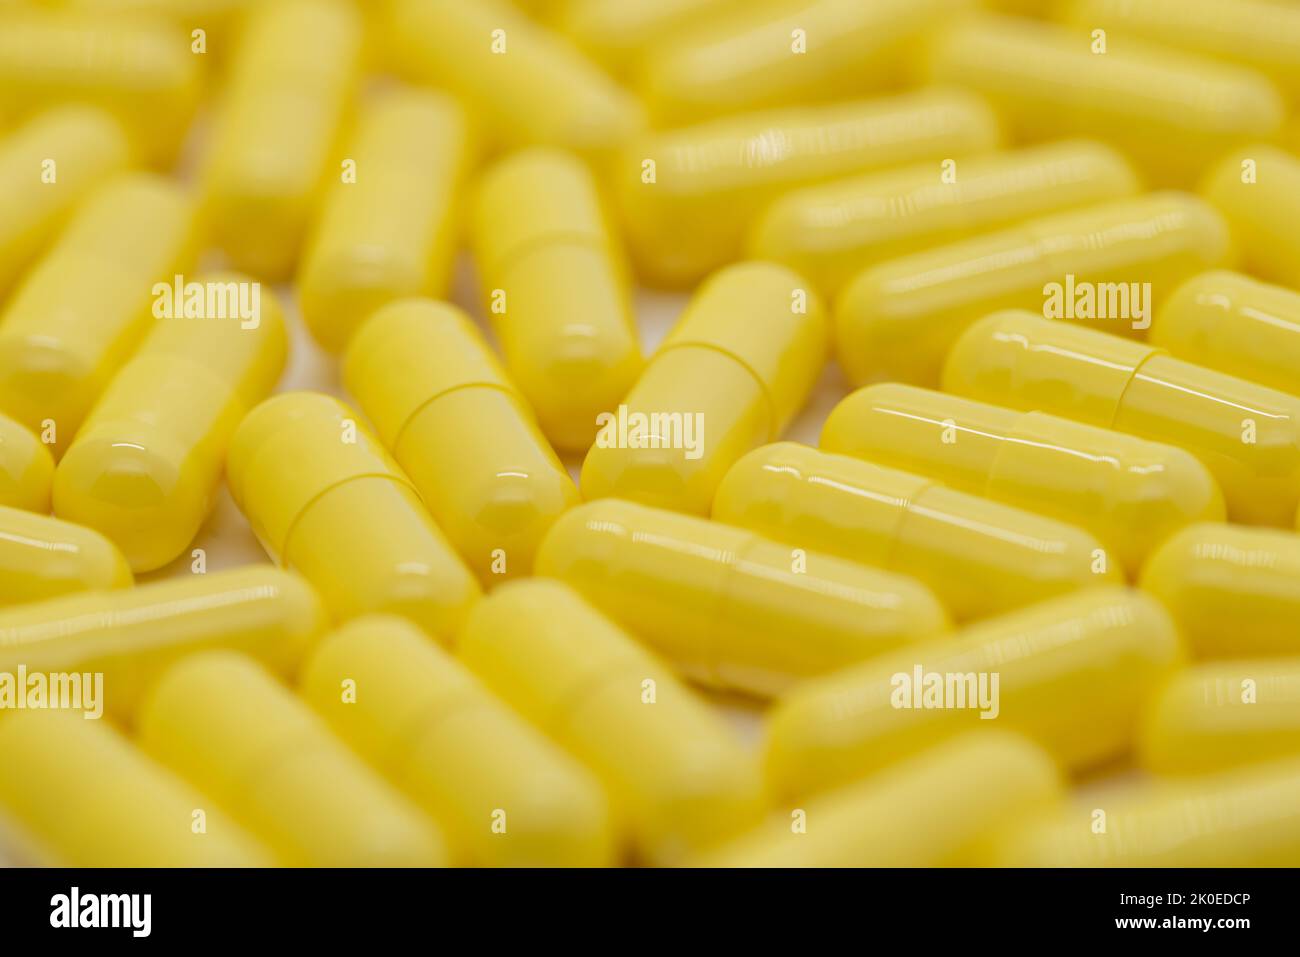 Molte pillole gialle distribuite, medicina, immagine ritagliata Foto Stock